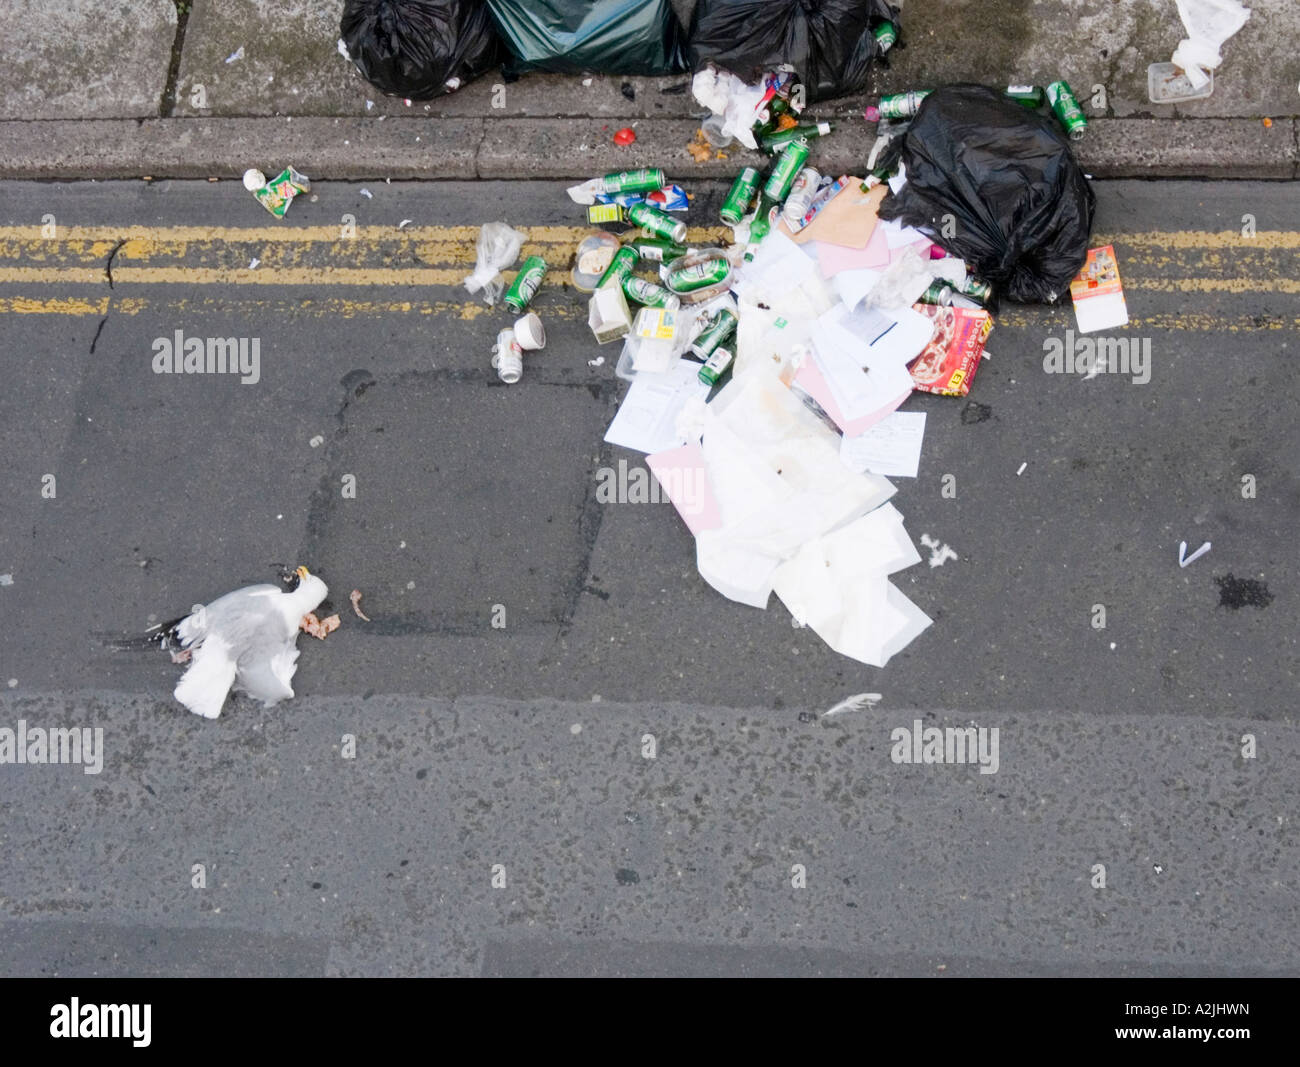 Tote Möwe, die einen Müllsack gepickt hatte, von einem Auto platt gemacht  Stockfotografie - Alamy